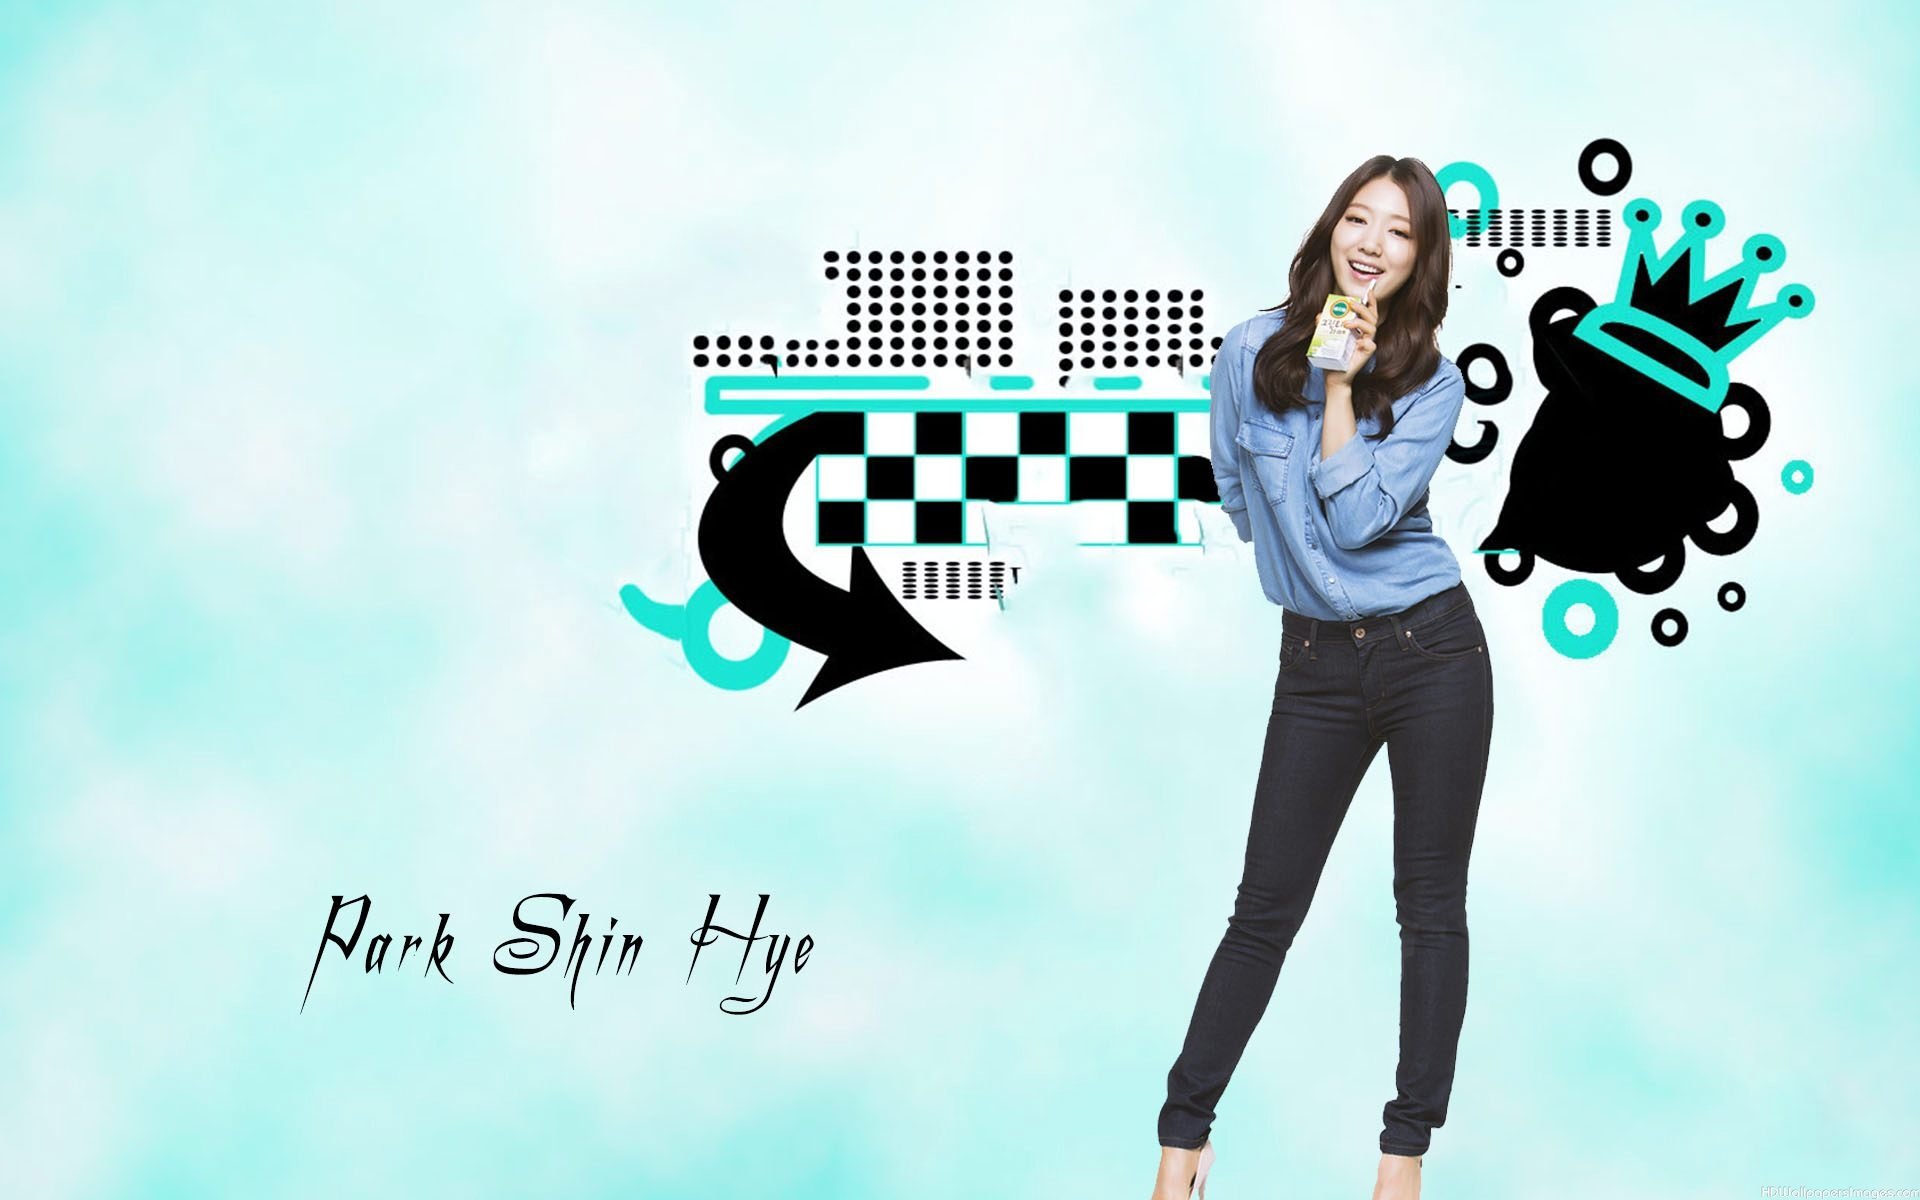 Park Shin Hye - Park Shin Hye Wallpaper 38464657 - Fanpop